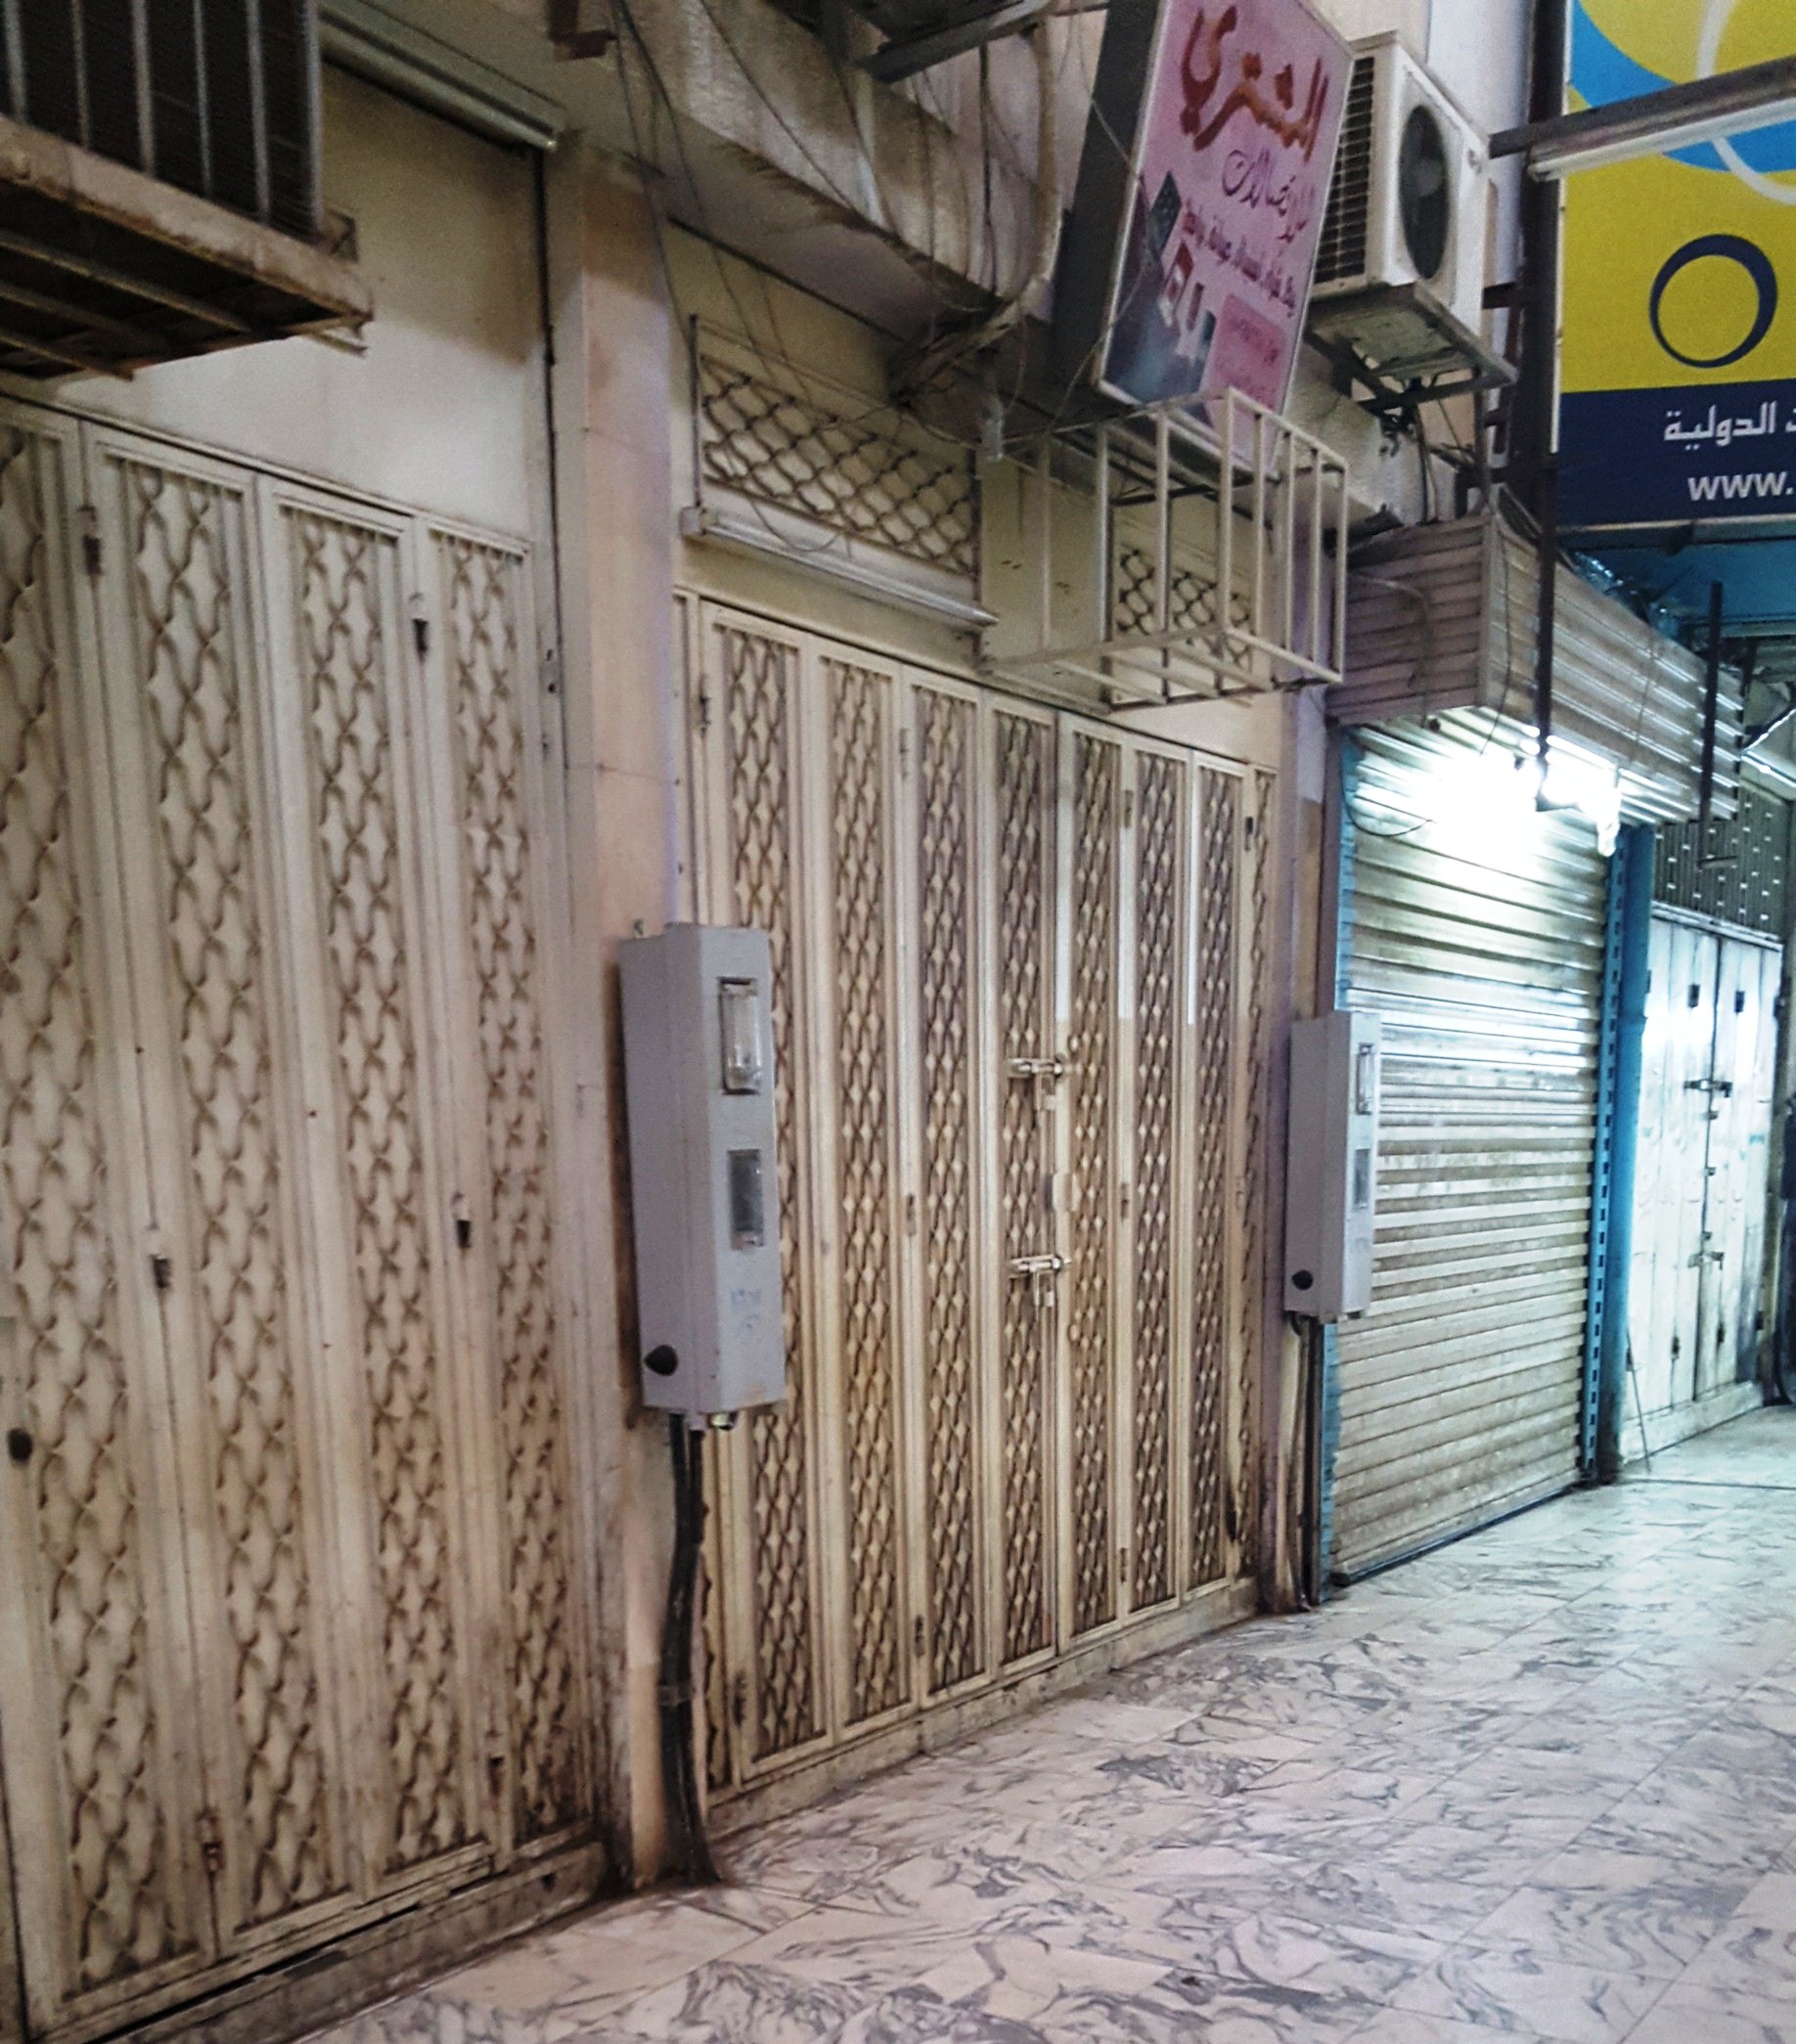 “المواطن” توثّق بالصور.. إغلاق 60% من محلات الجوّال بالطائف قبل التوطين الكامل